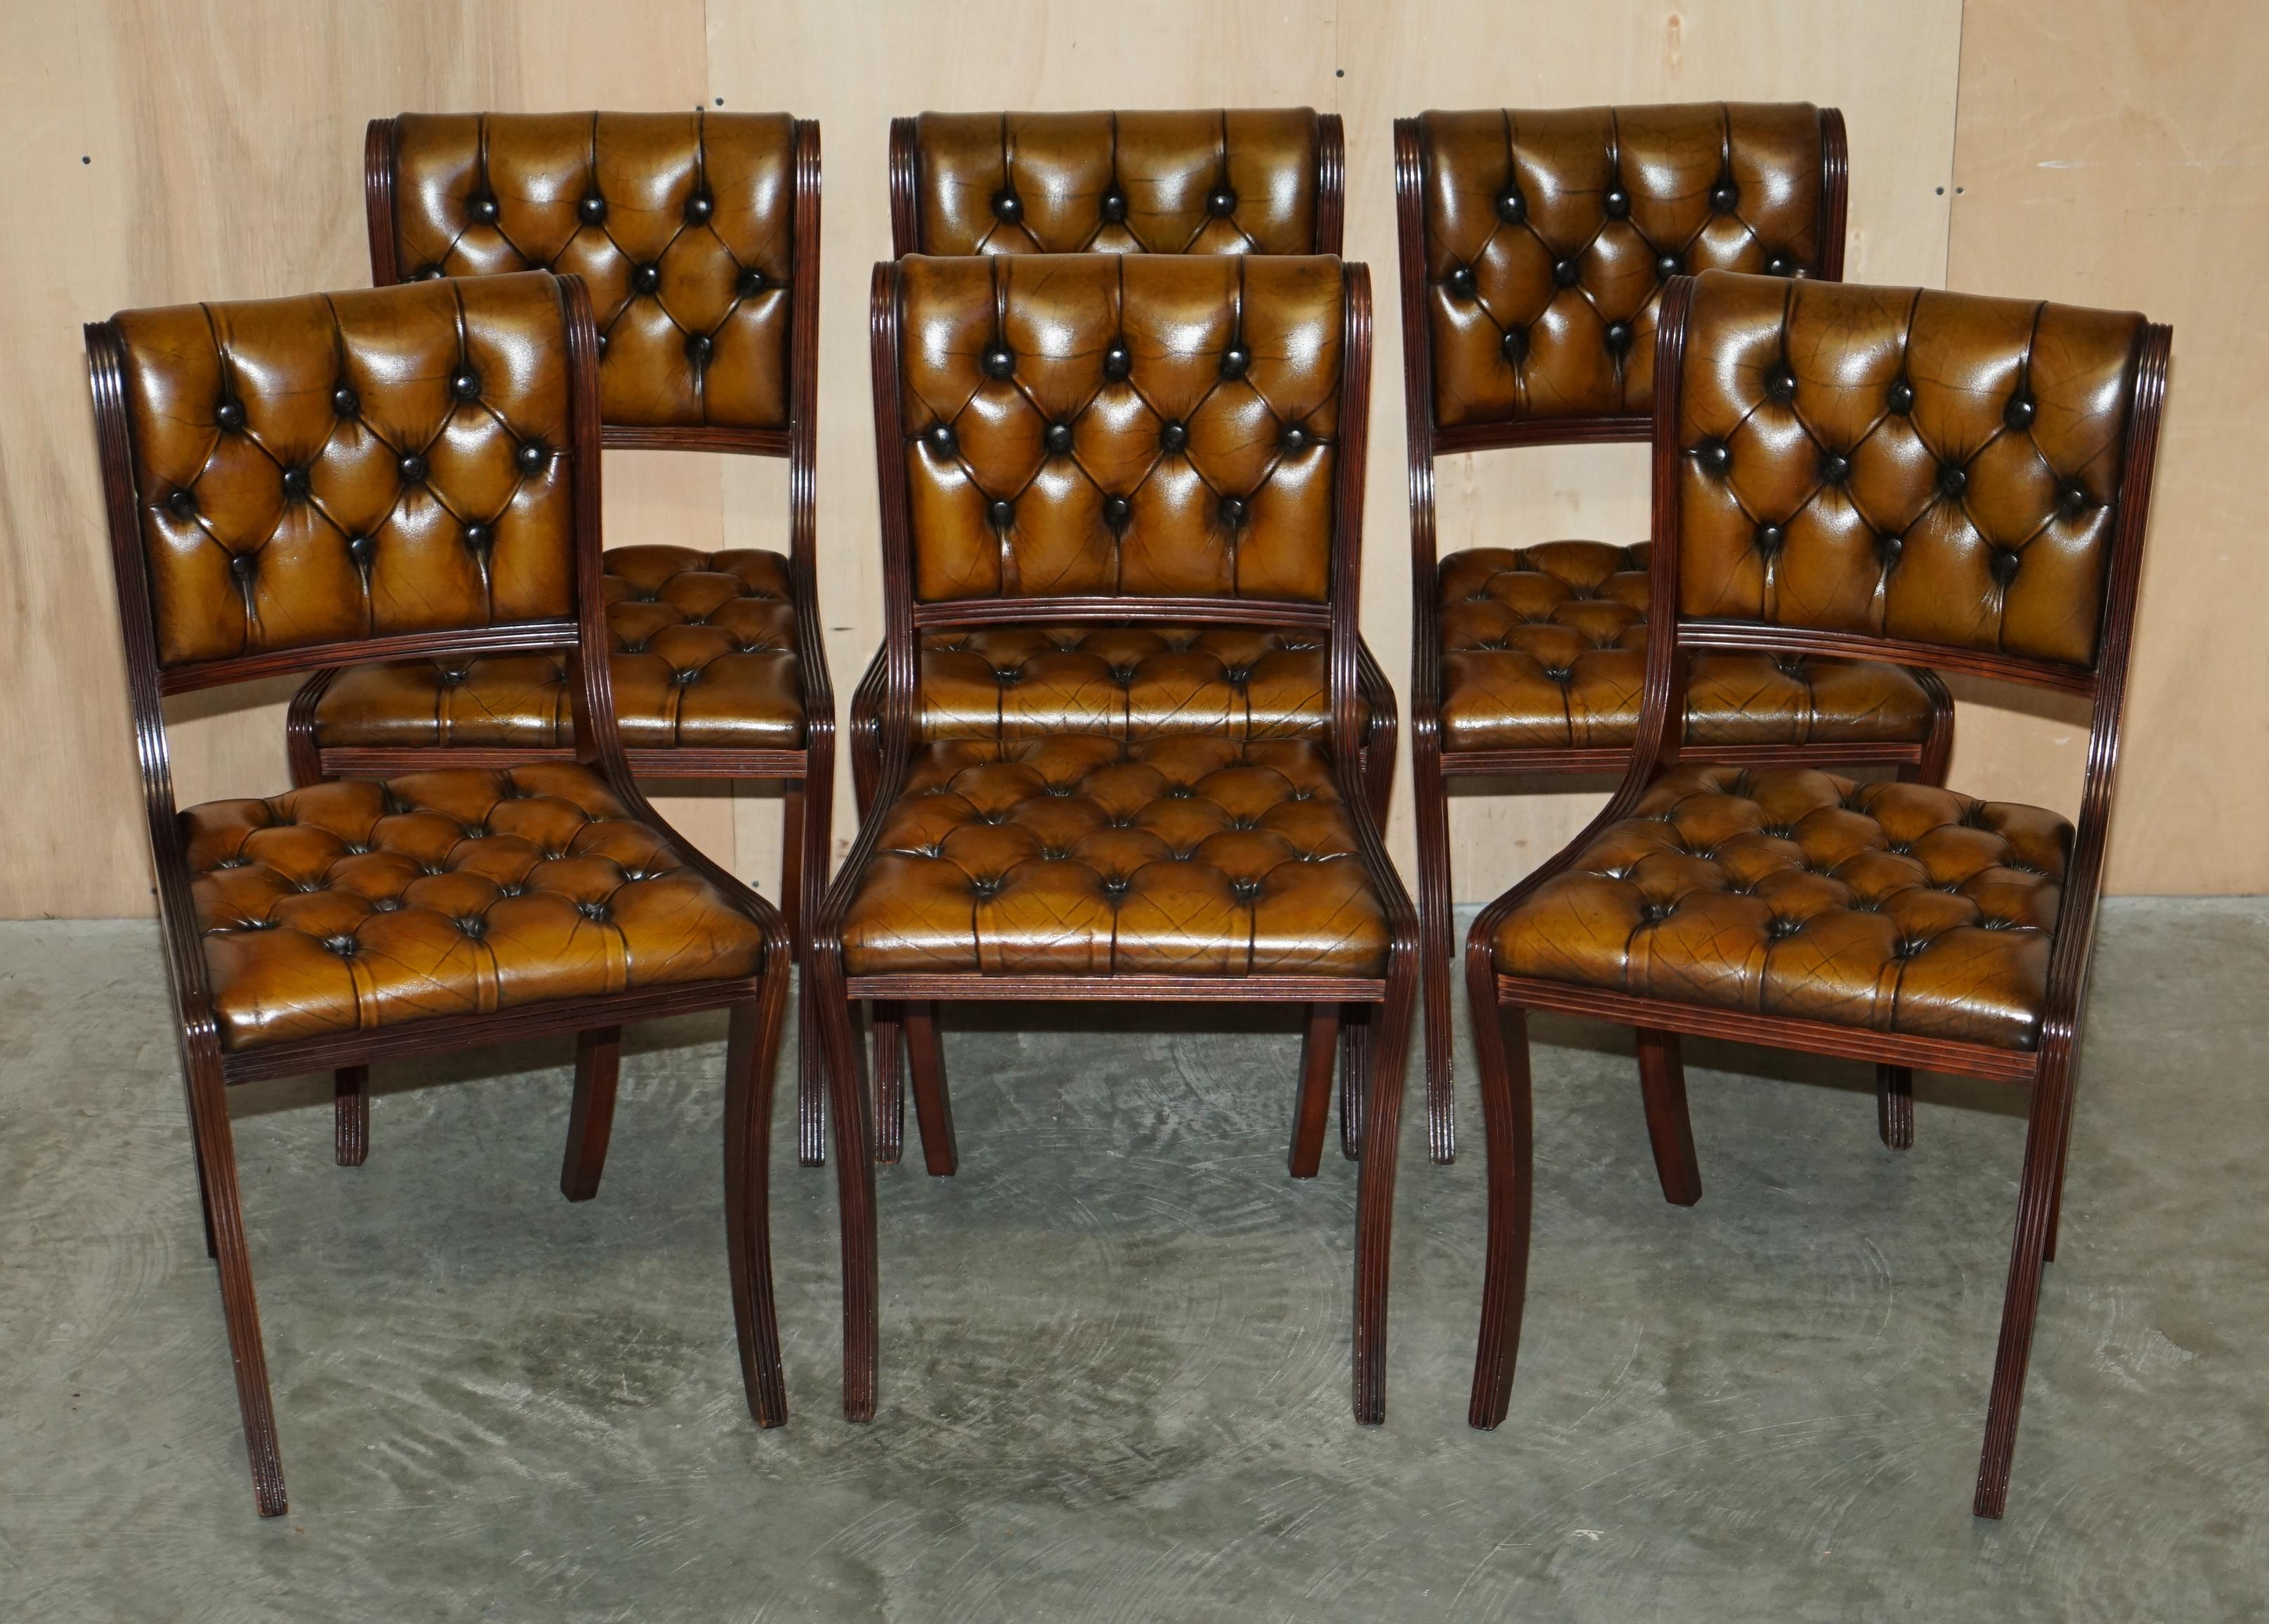 Nous avons le plaisir de proposer à la vente cette superbe suite de huit chaises de salle à manger de style Regency en cuir Chesterfield vieilli, brun cigare, en acajou, entièrement restaurées.

Une suite absolument sublime de huit chaises de